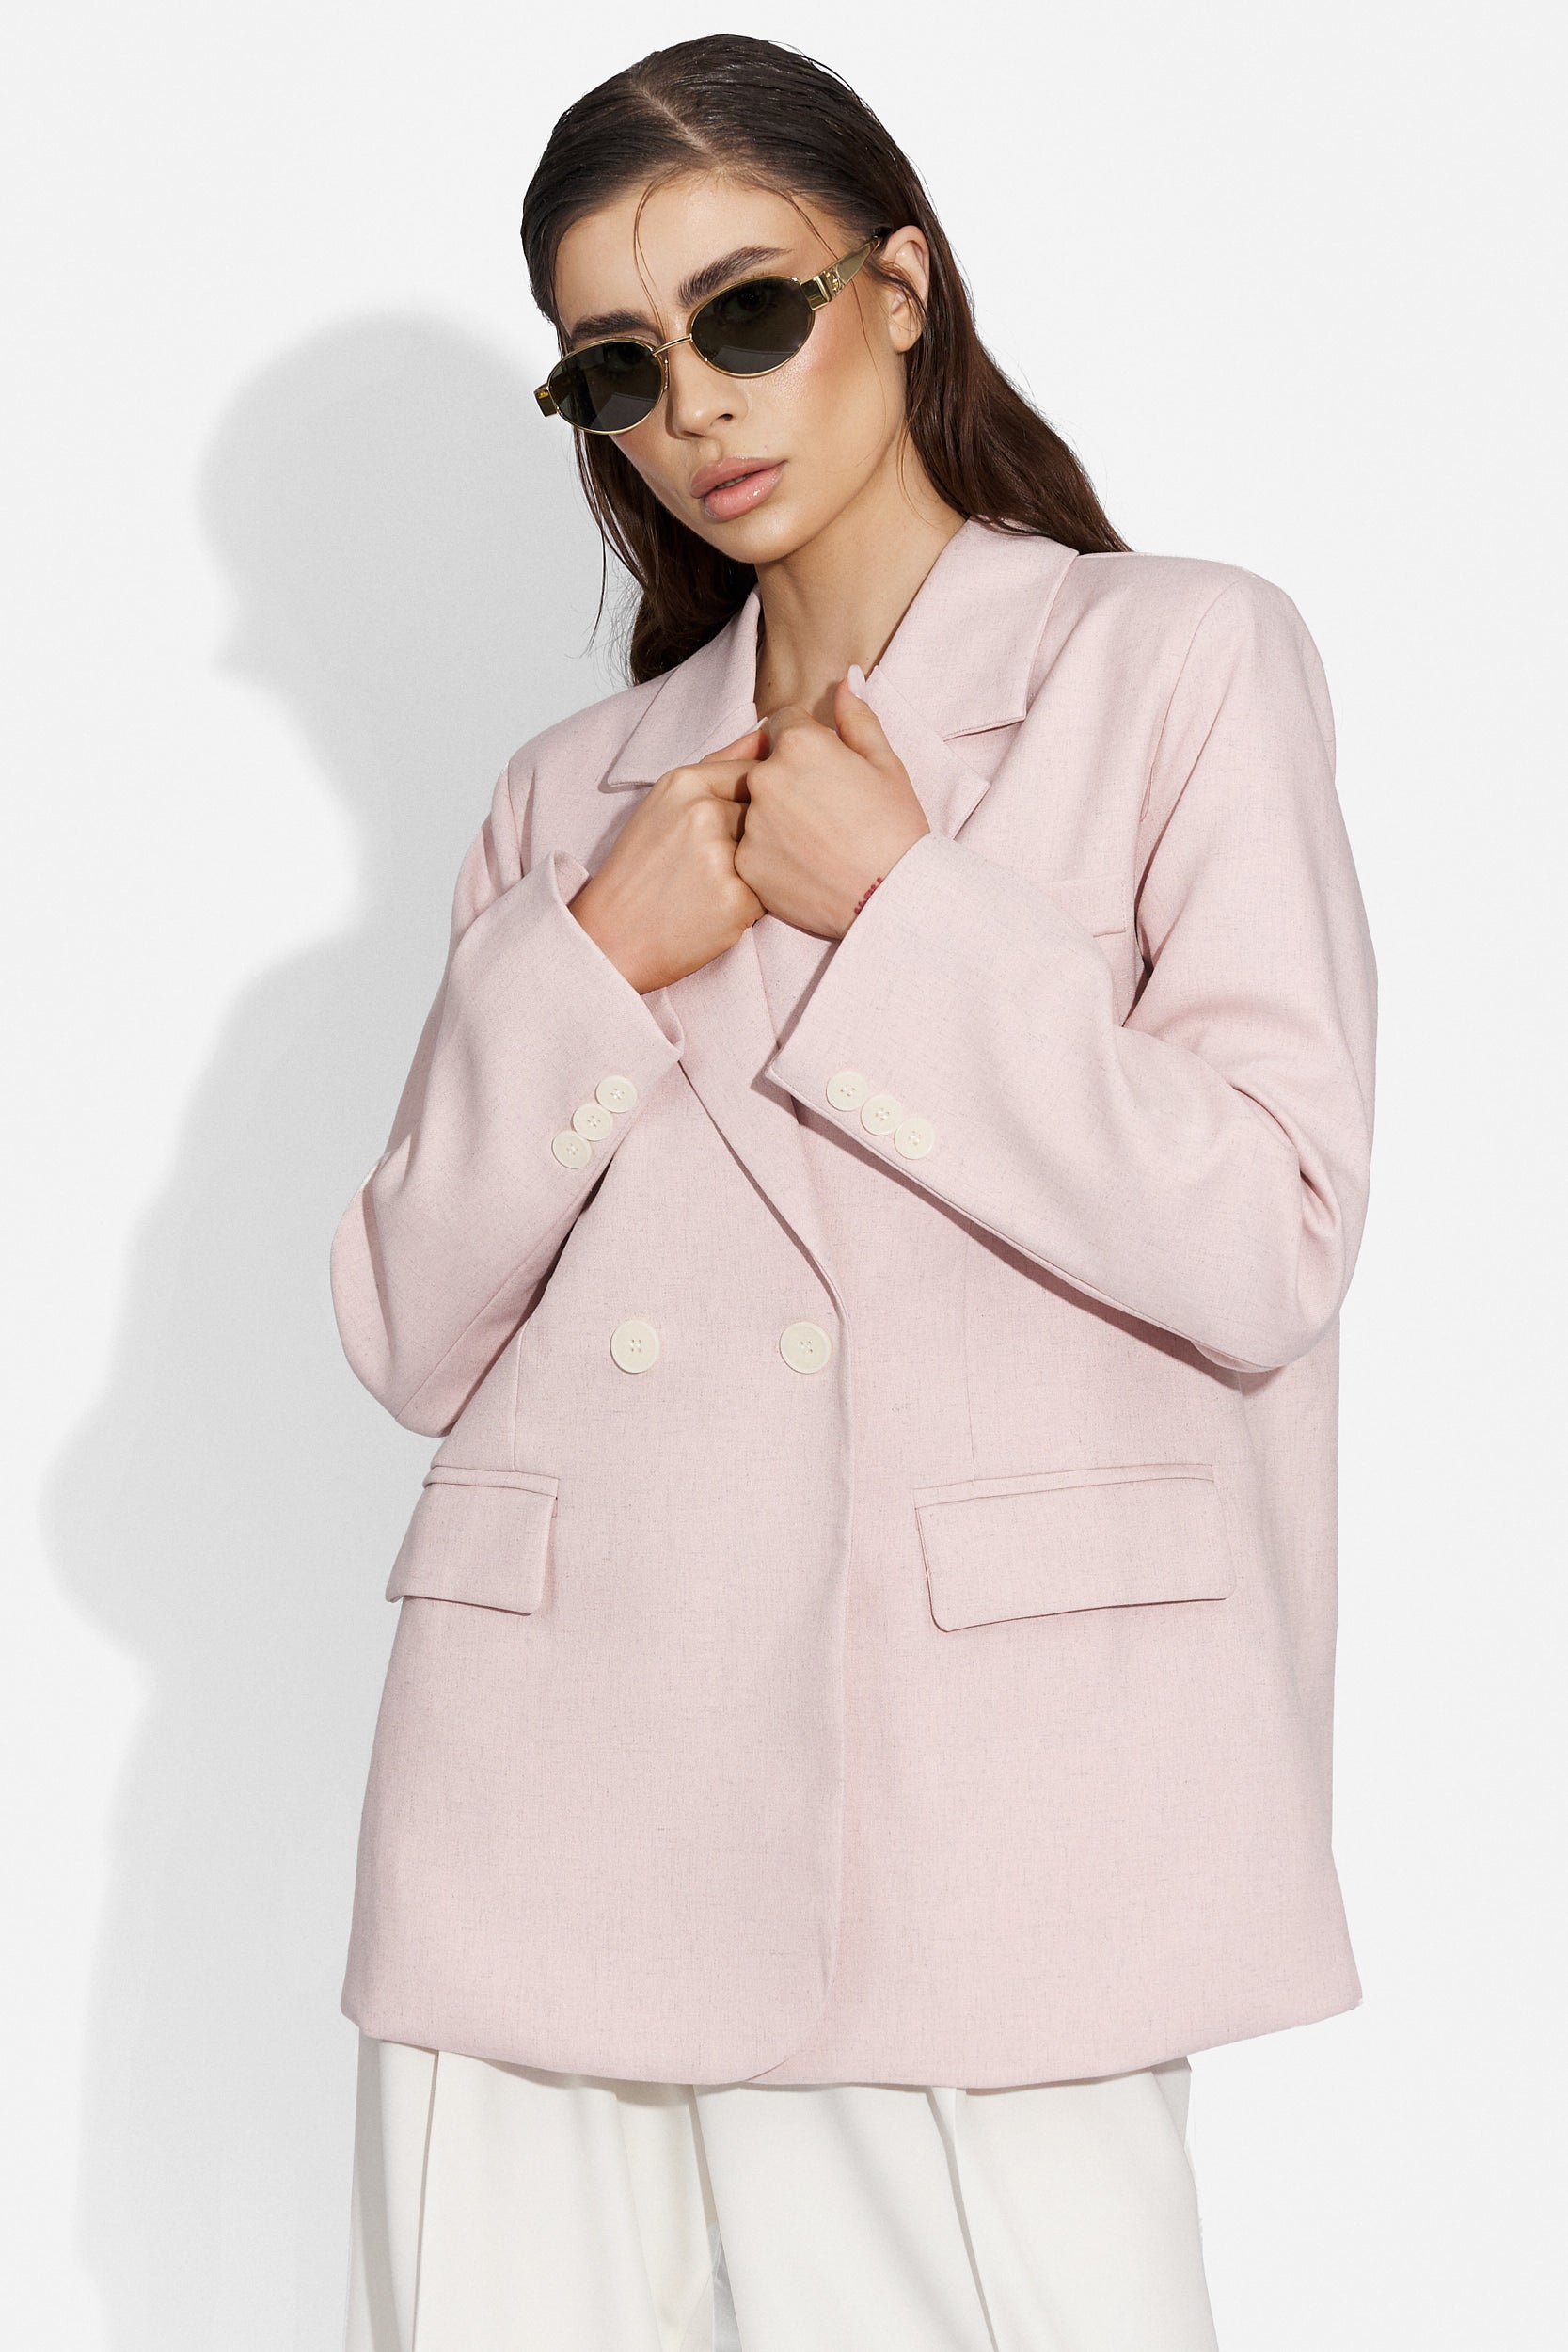 Marymia Bogas elegáns rózsaszín női kabát